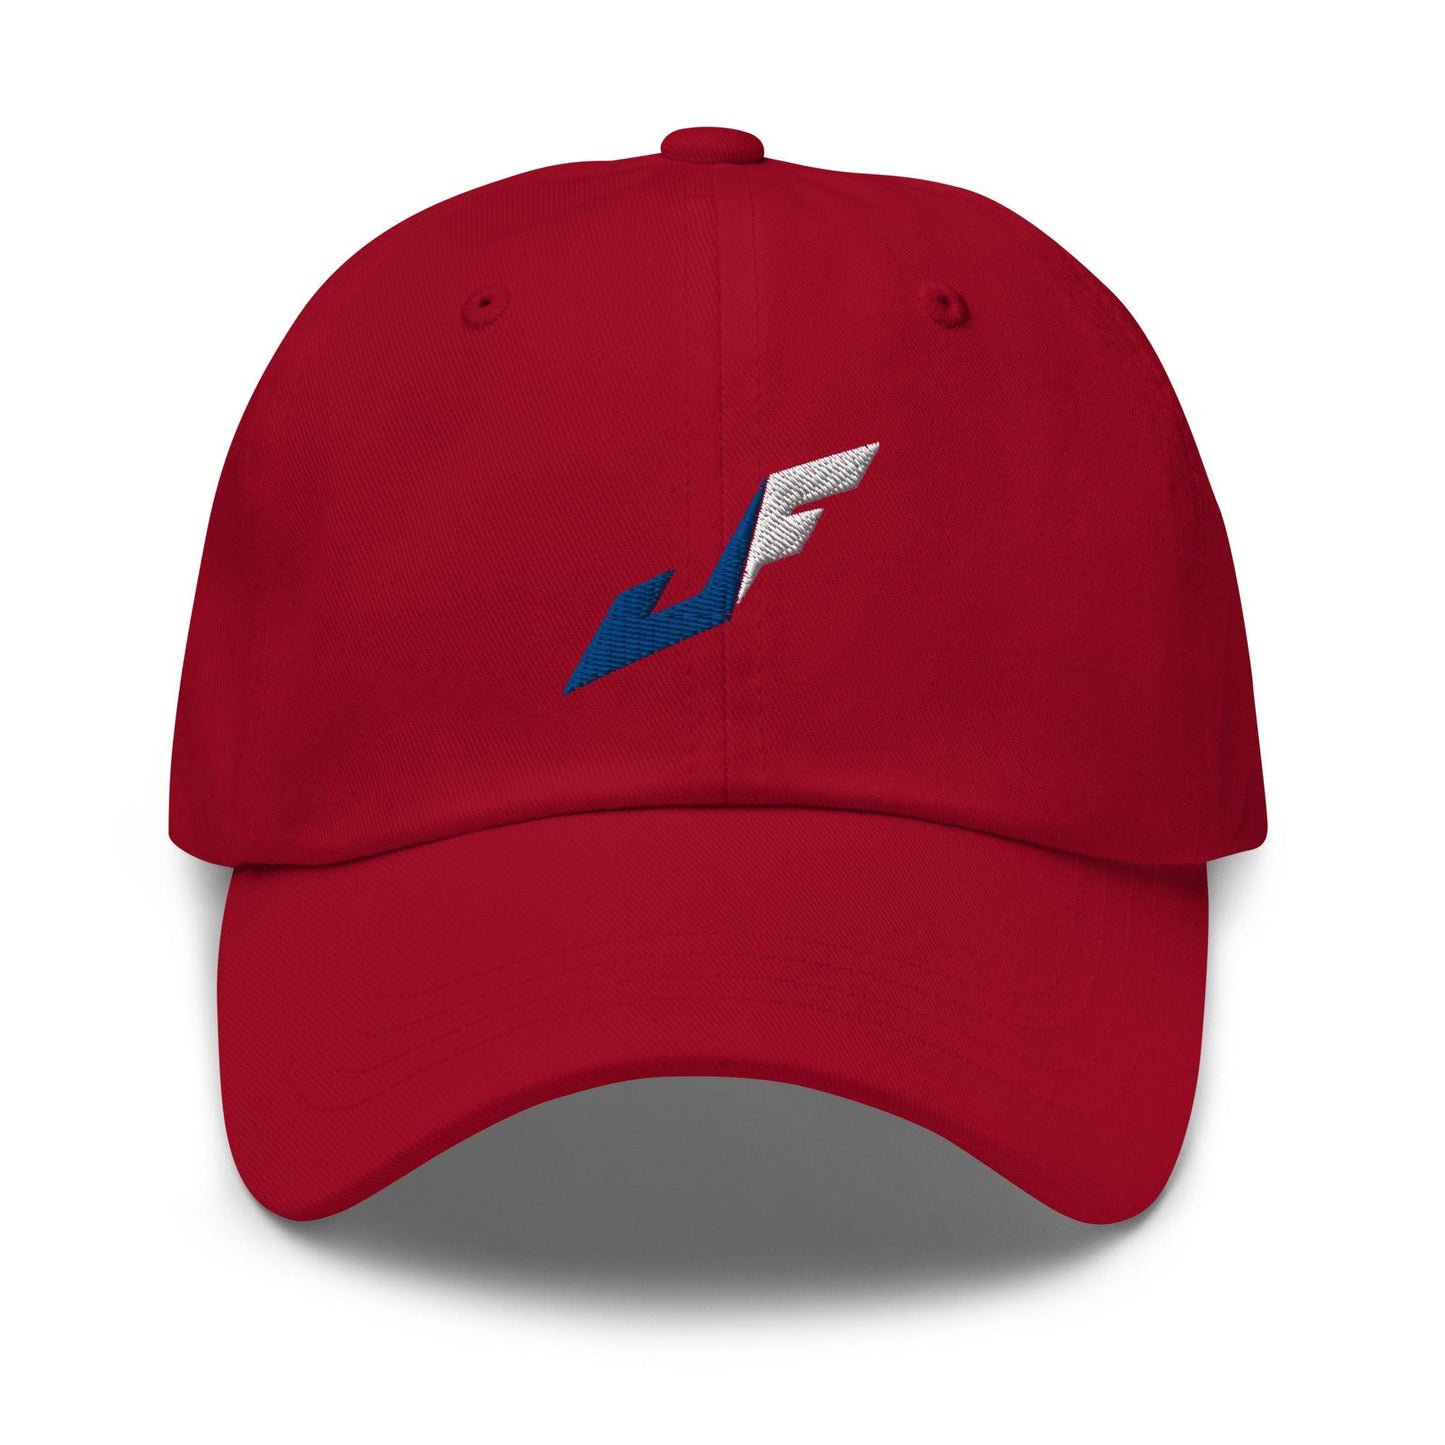 Jackson Ferris “JF” hat - Fan Arch